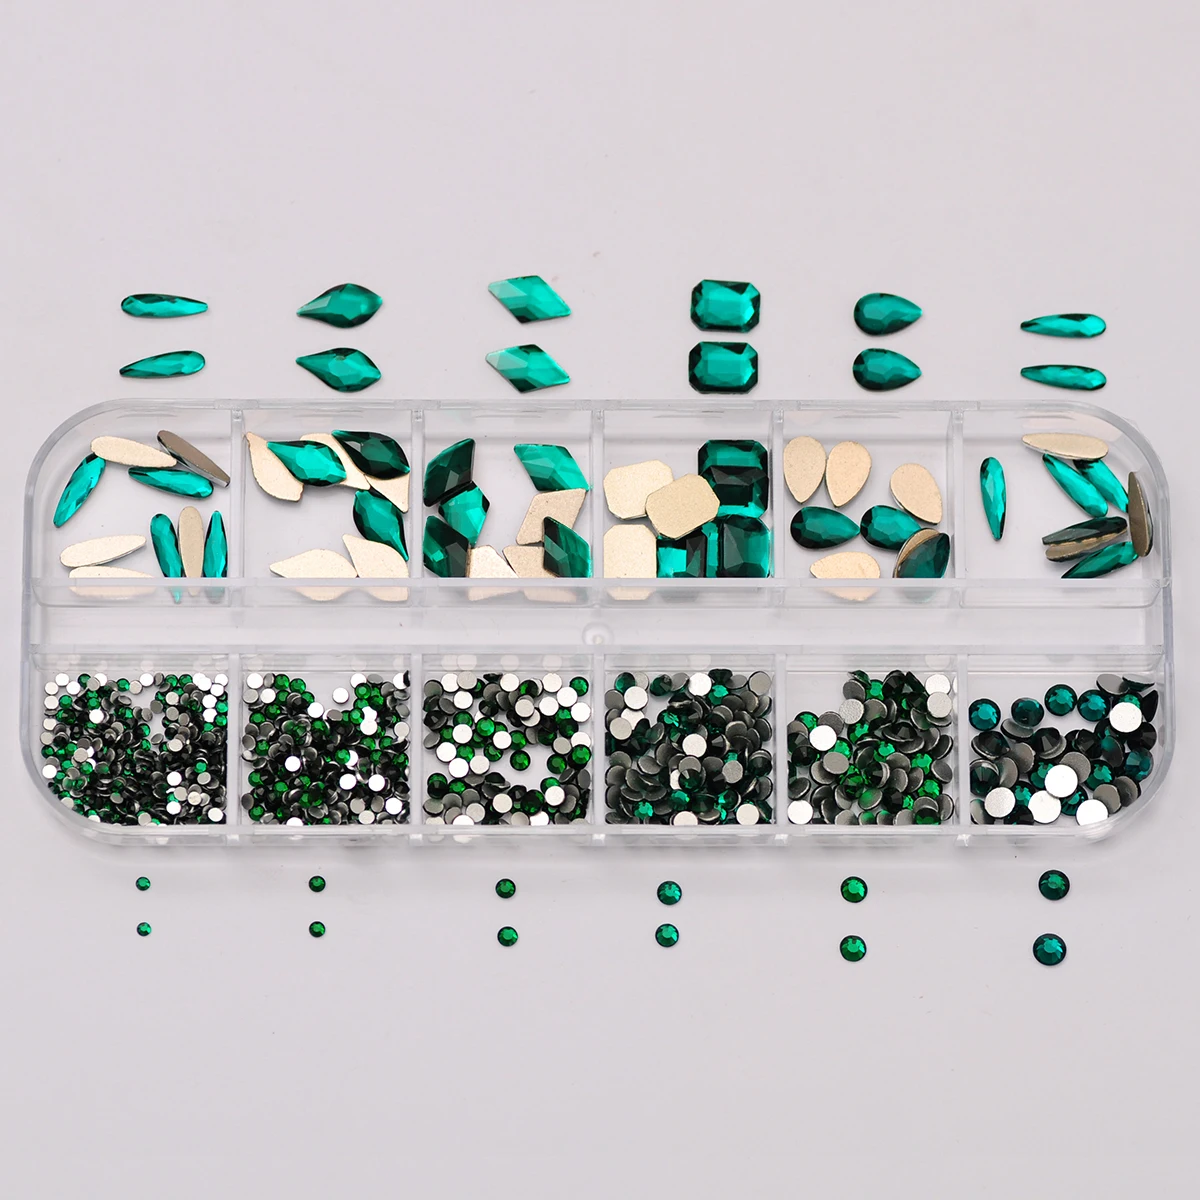 

12 ячеек/набор, сапфировые/изумрудные Стразы для ногтей, 3D блестящие алмазные украшения для дизайна ногтей, камни для маникюра